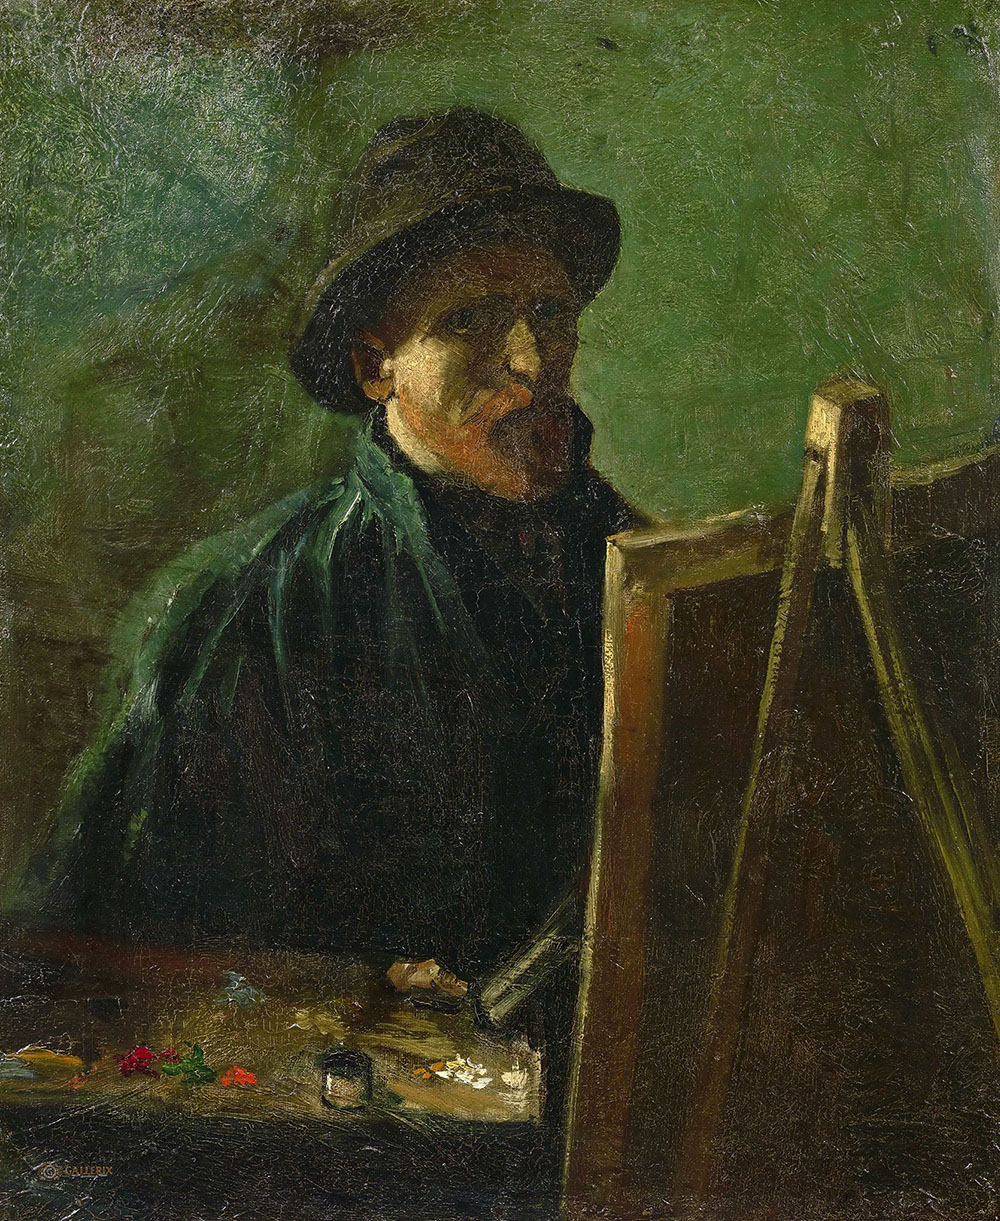 Винсент Ван Гог. "Автопортрет в фетровой шляпе у мольберта". 1886. Музей Ван Гога, Амстердам.